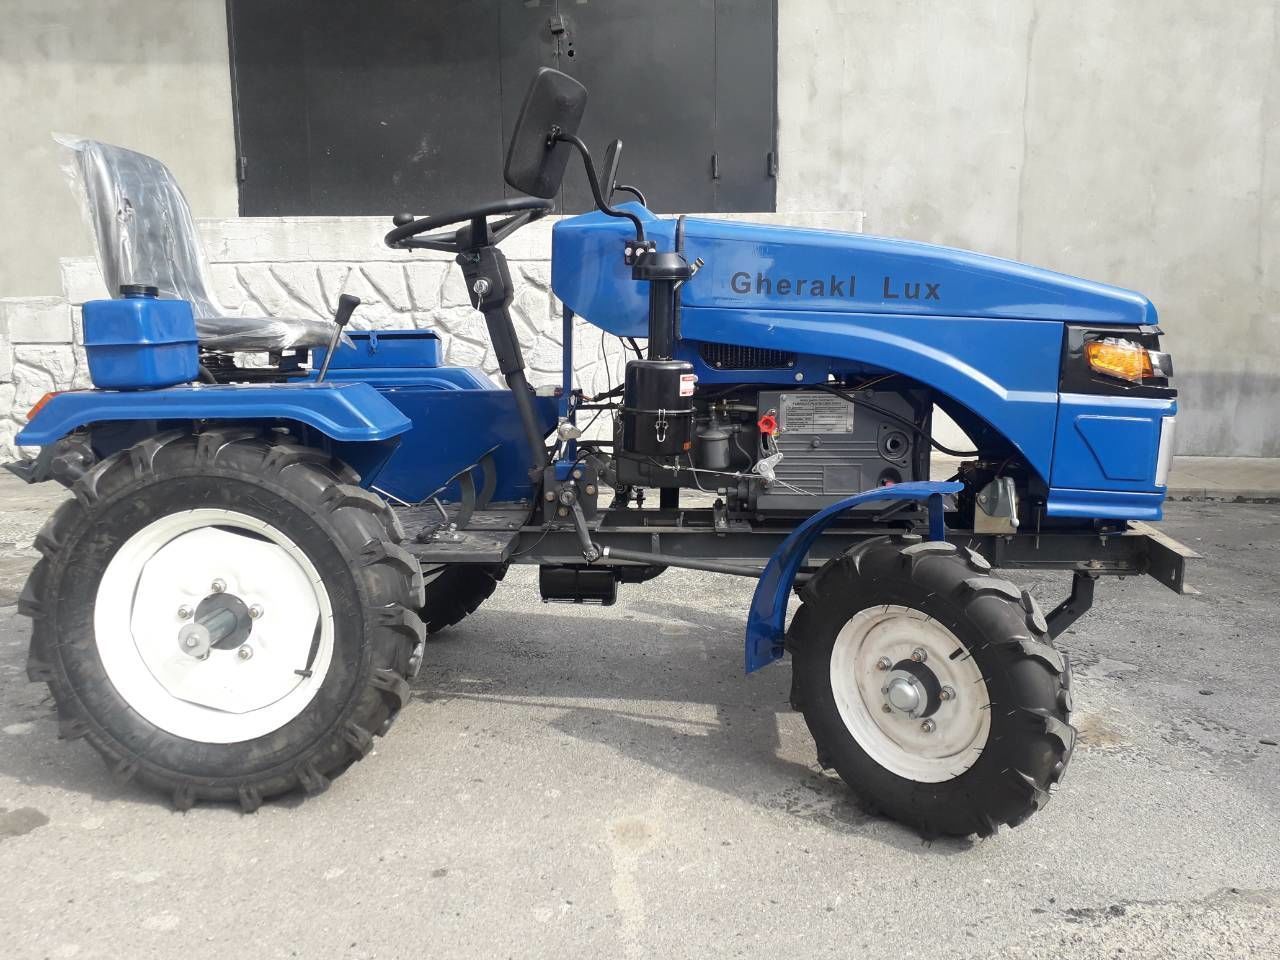 Мини трактора в молдавии бельцы сколько стоит нева мб 23 мультиагро